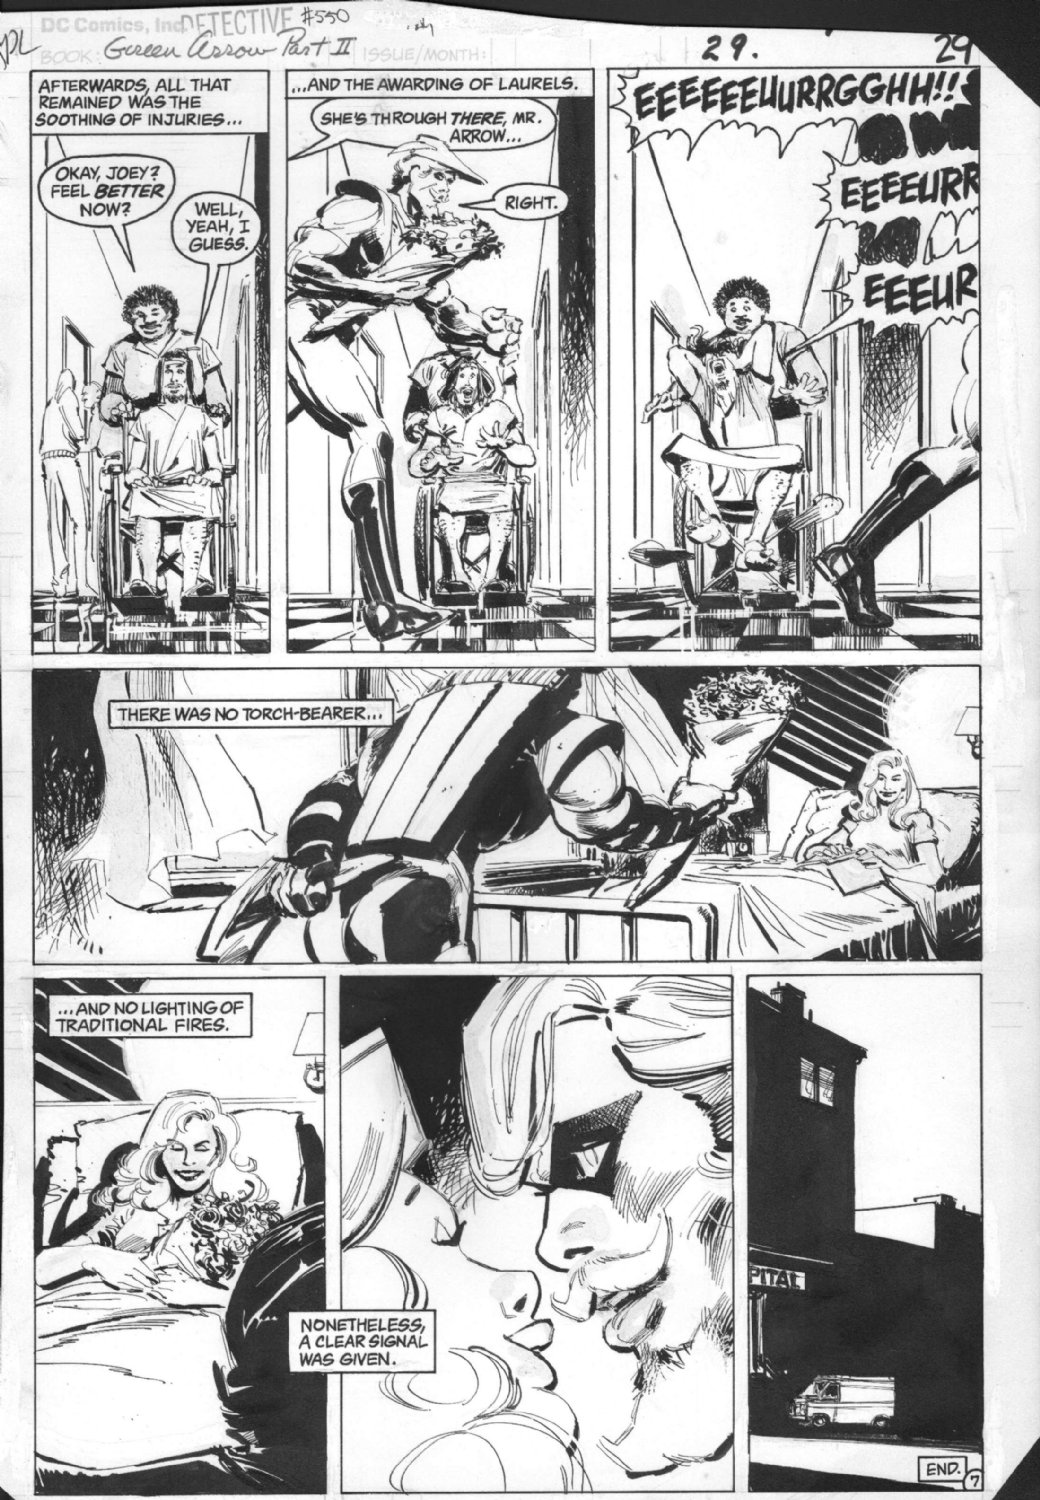 9.2 DC COMICS BATMAN ALAN MOORE GREEN ARROW SIDE STORY Detective Comics #550 NM